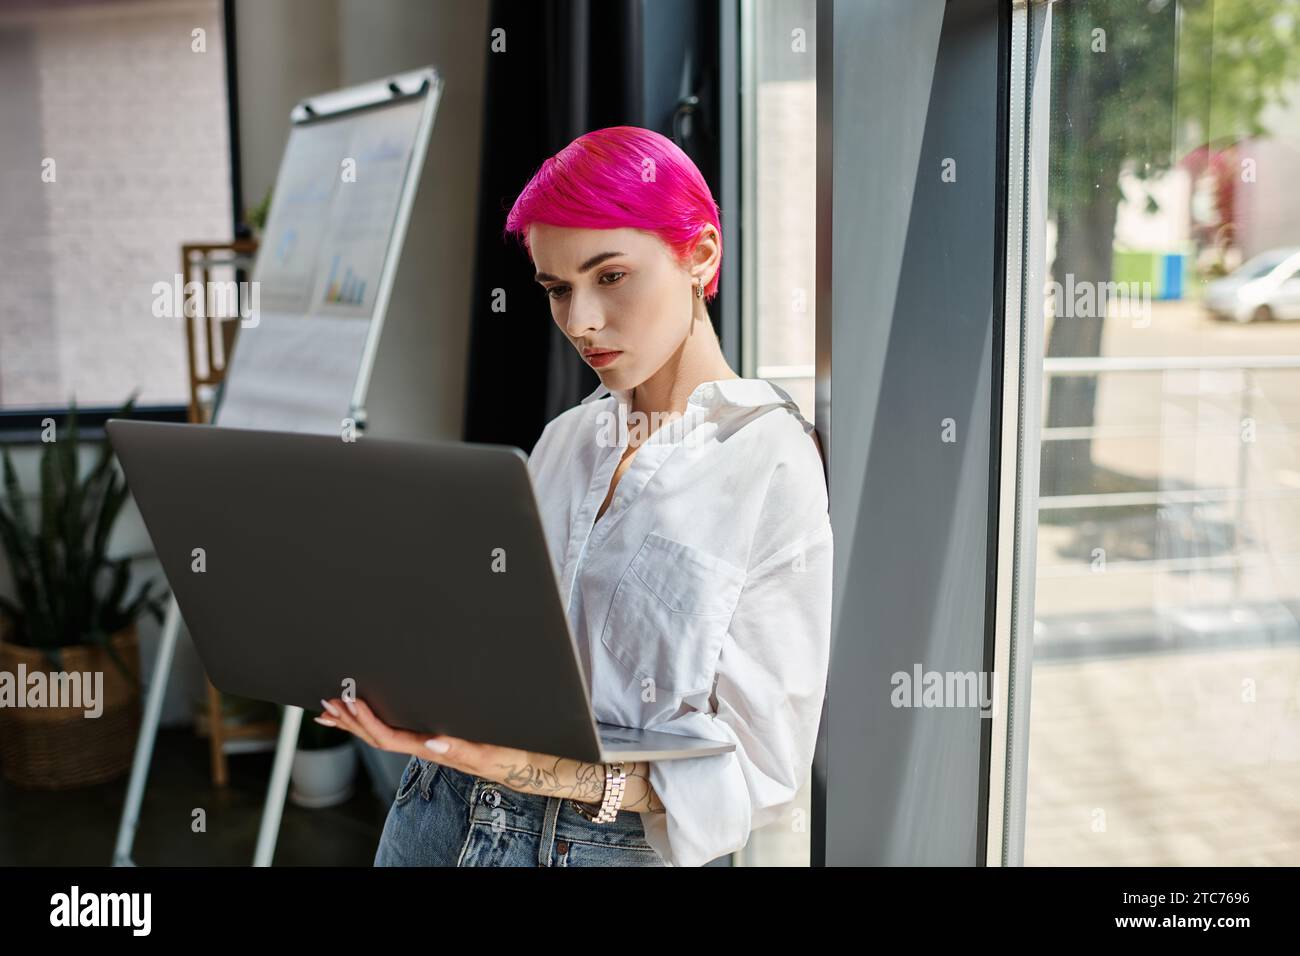 giovane donna d'affari con i capelli corti rosa che guarda il suo notebook mentre lavora in ufficio Foto Stock